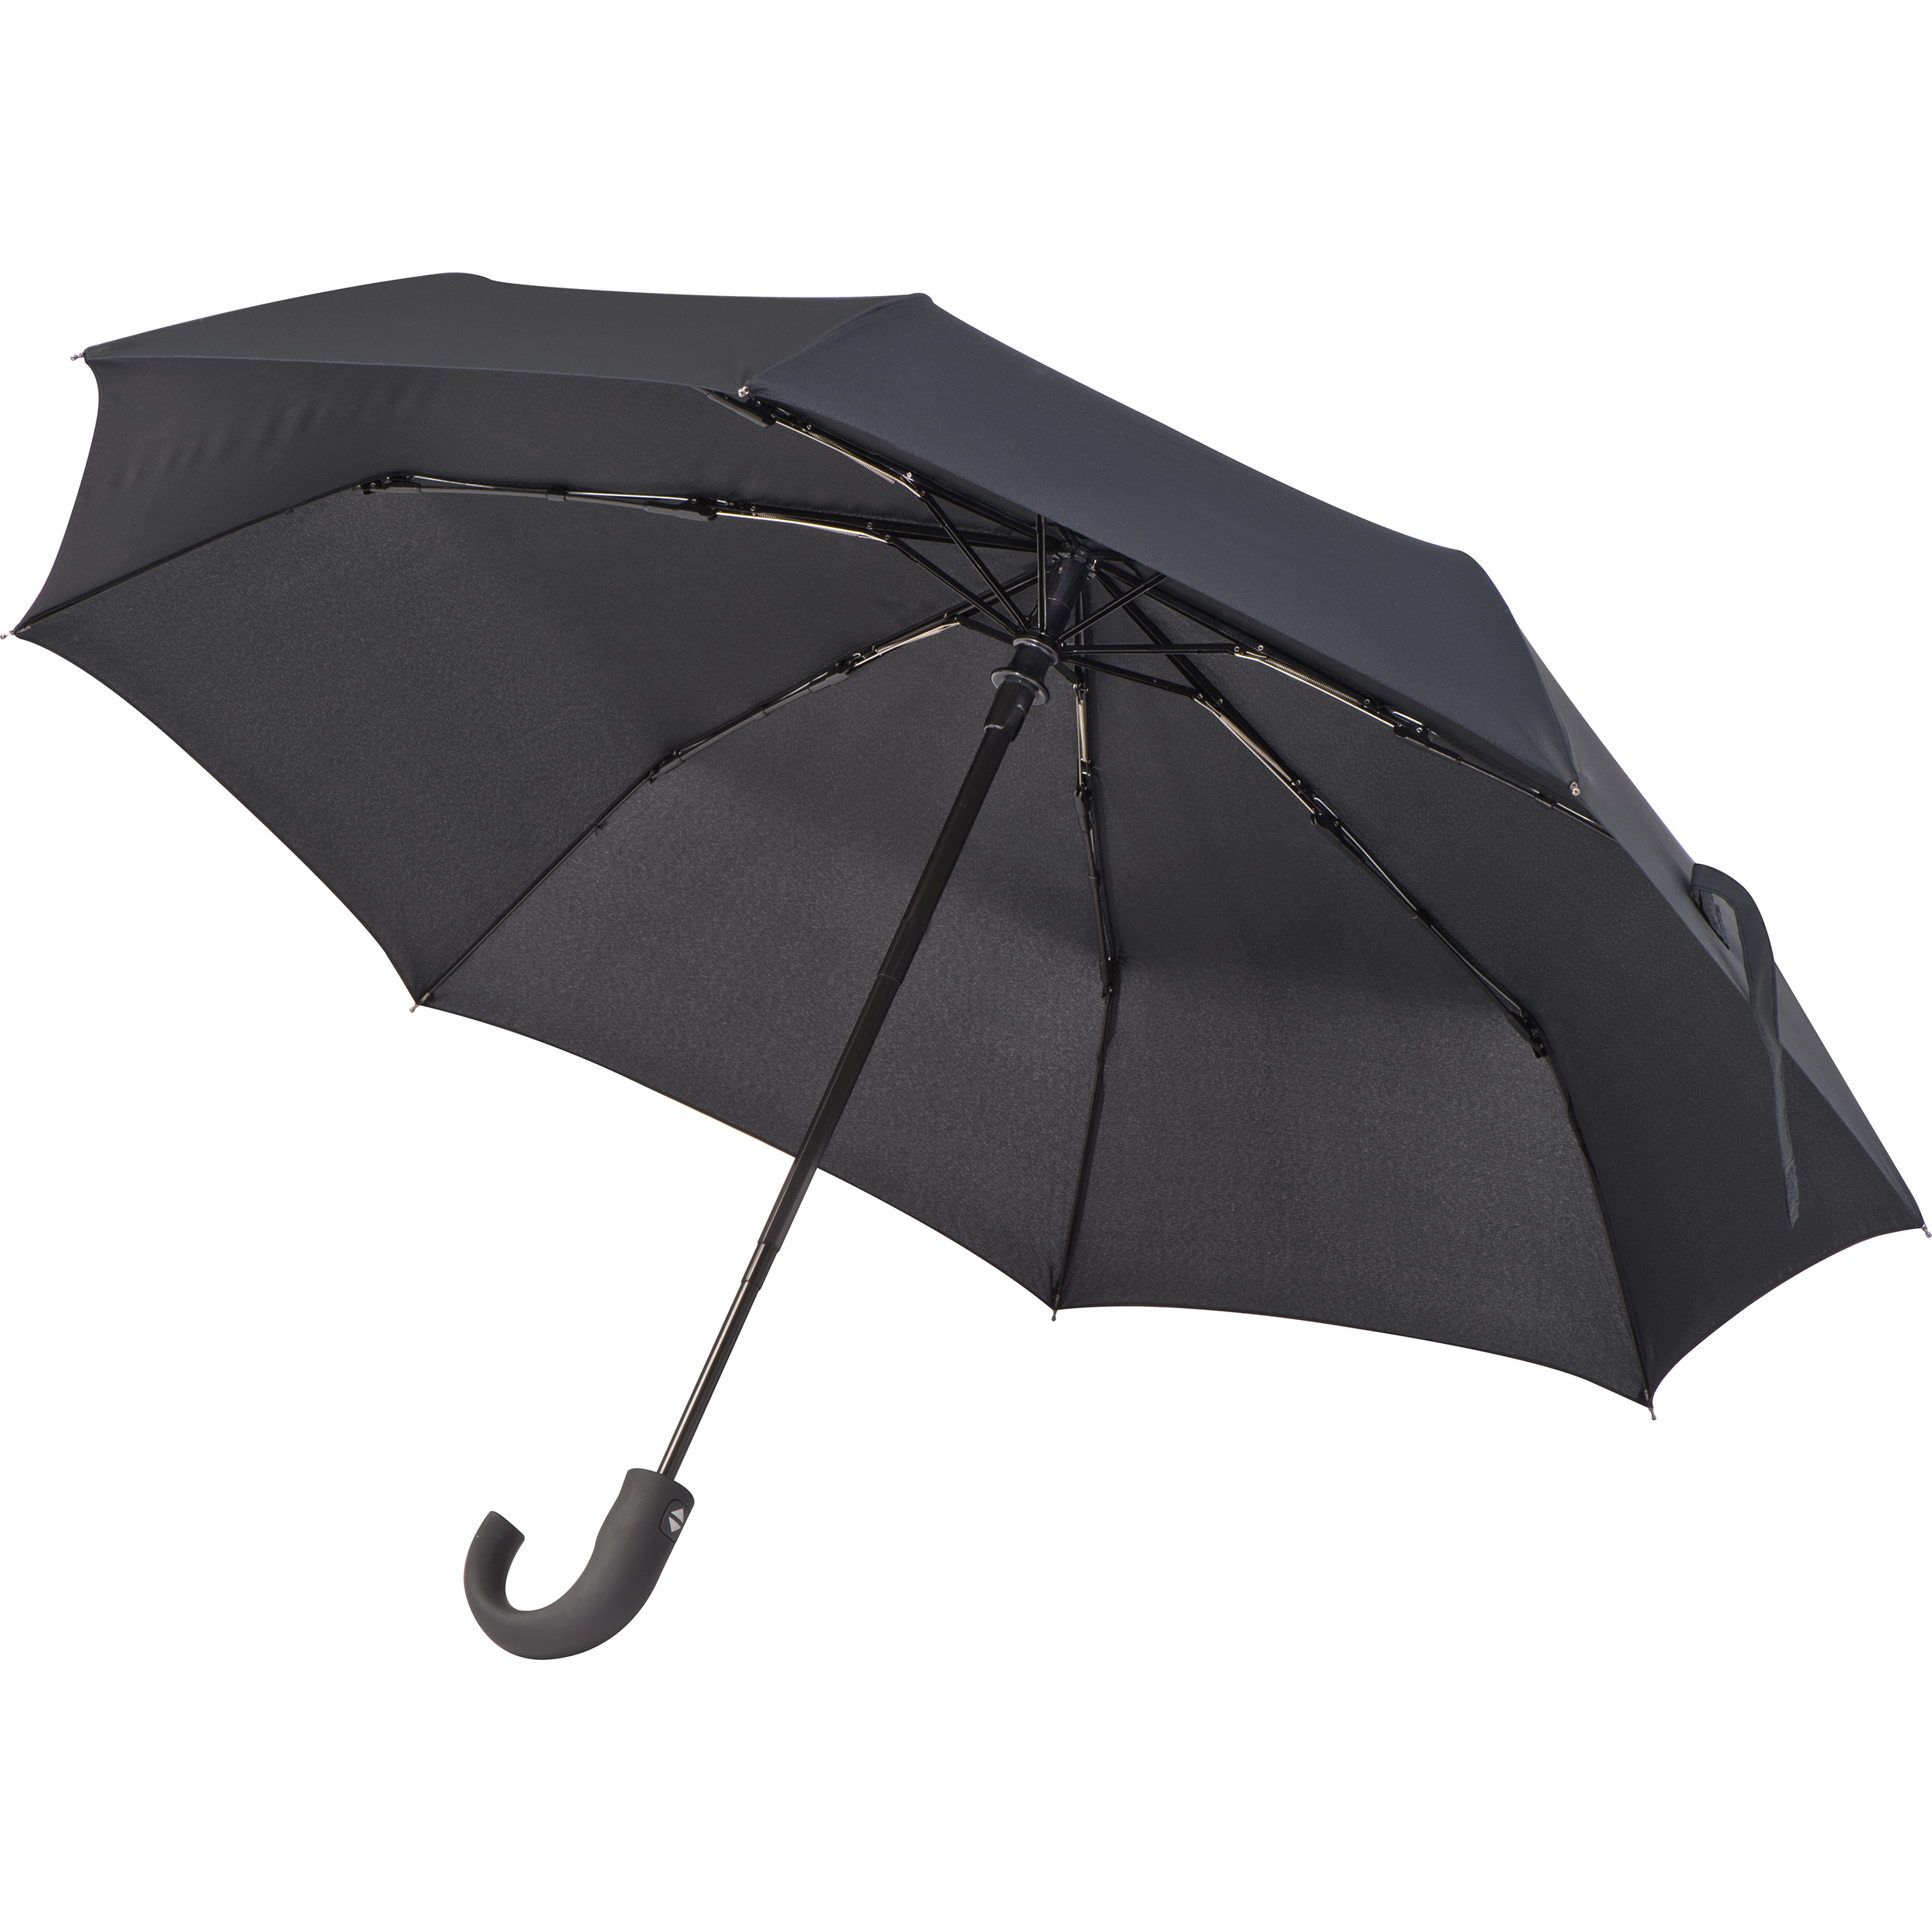 Parapluie de Poche LogoGuard - Chantilly - Zaprinta France